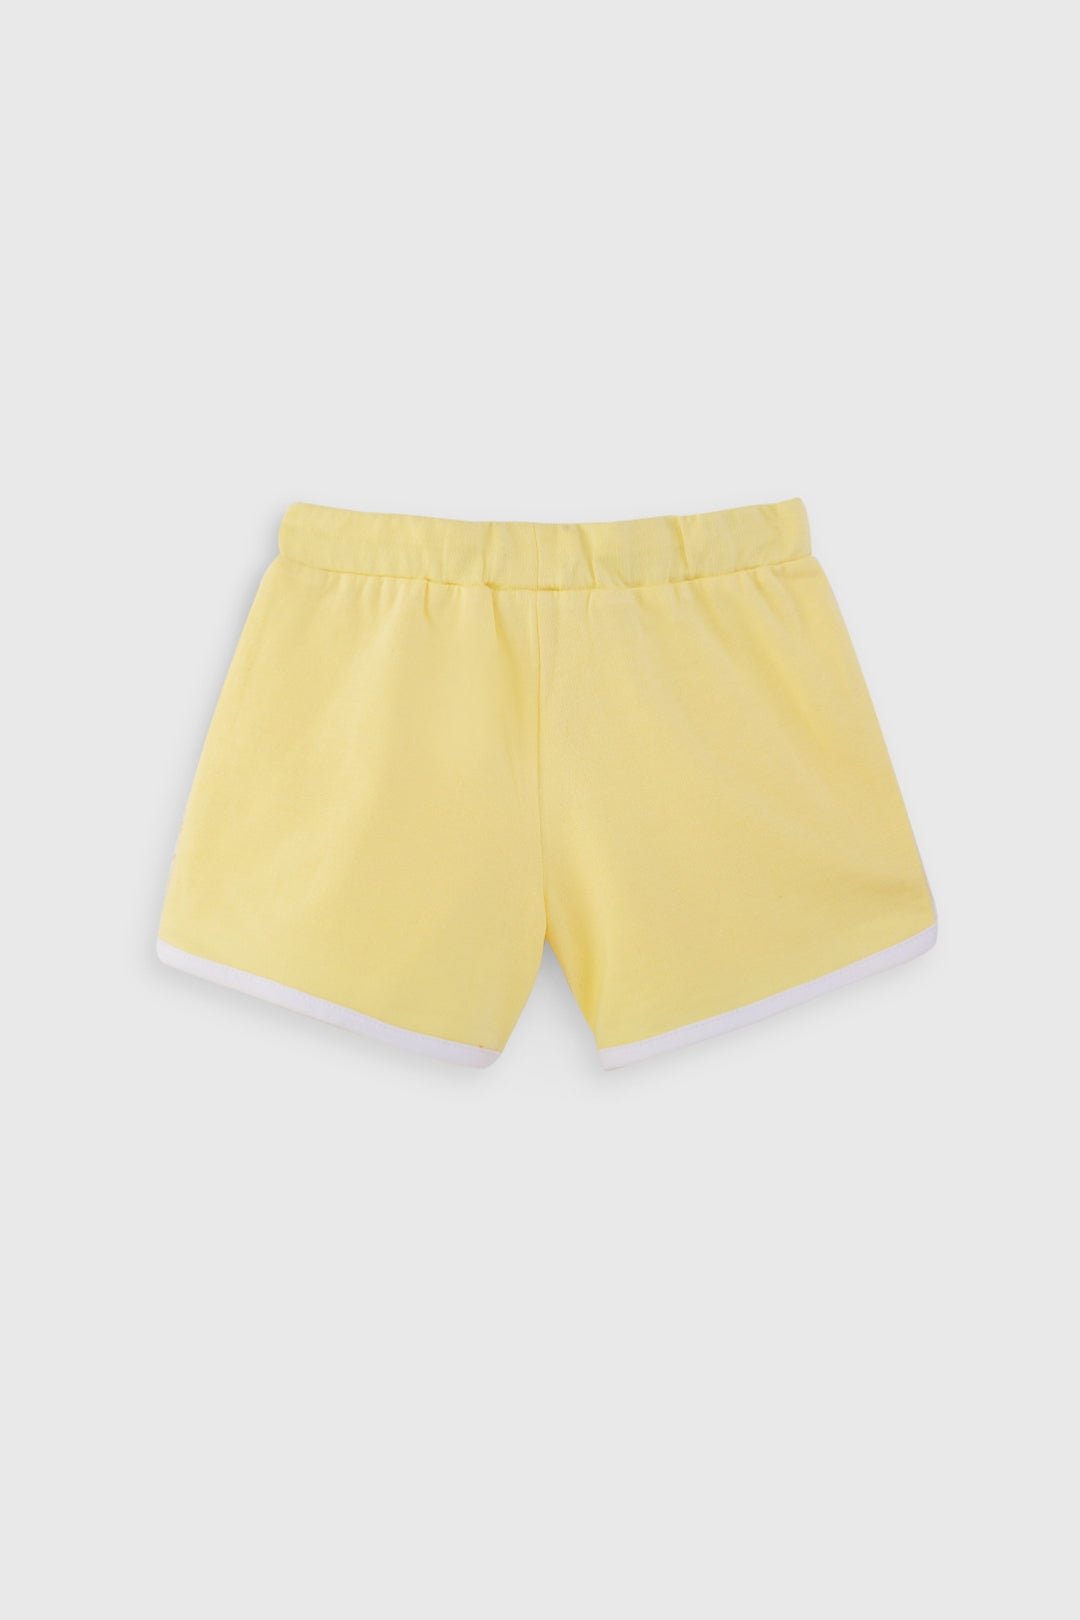 girls yellow shorts